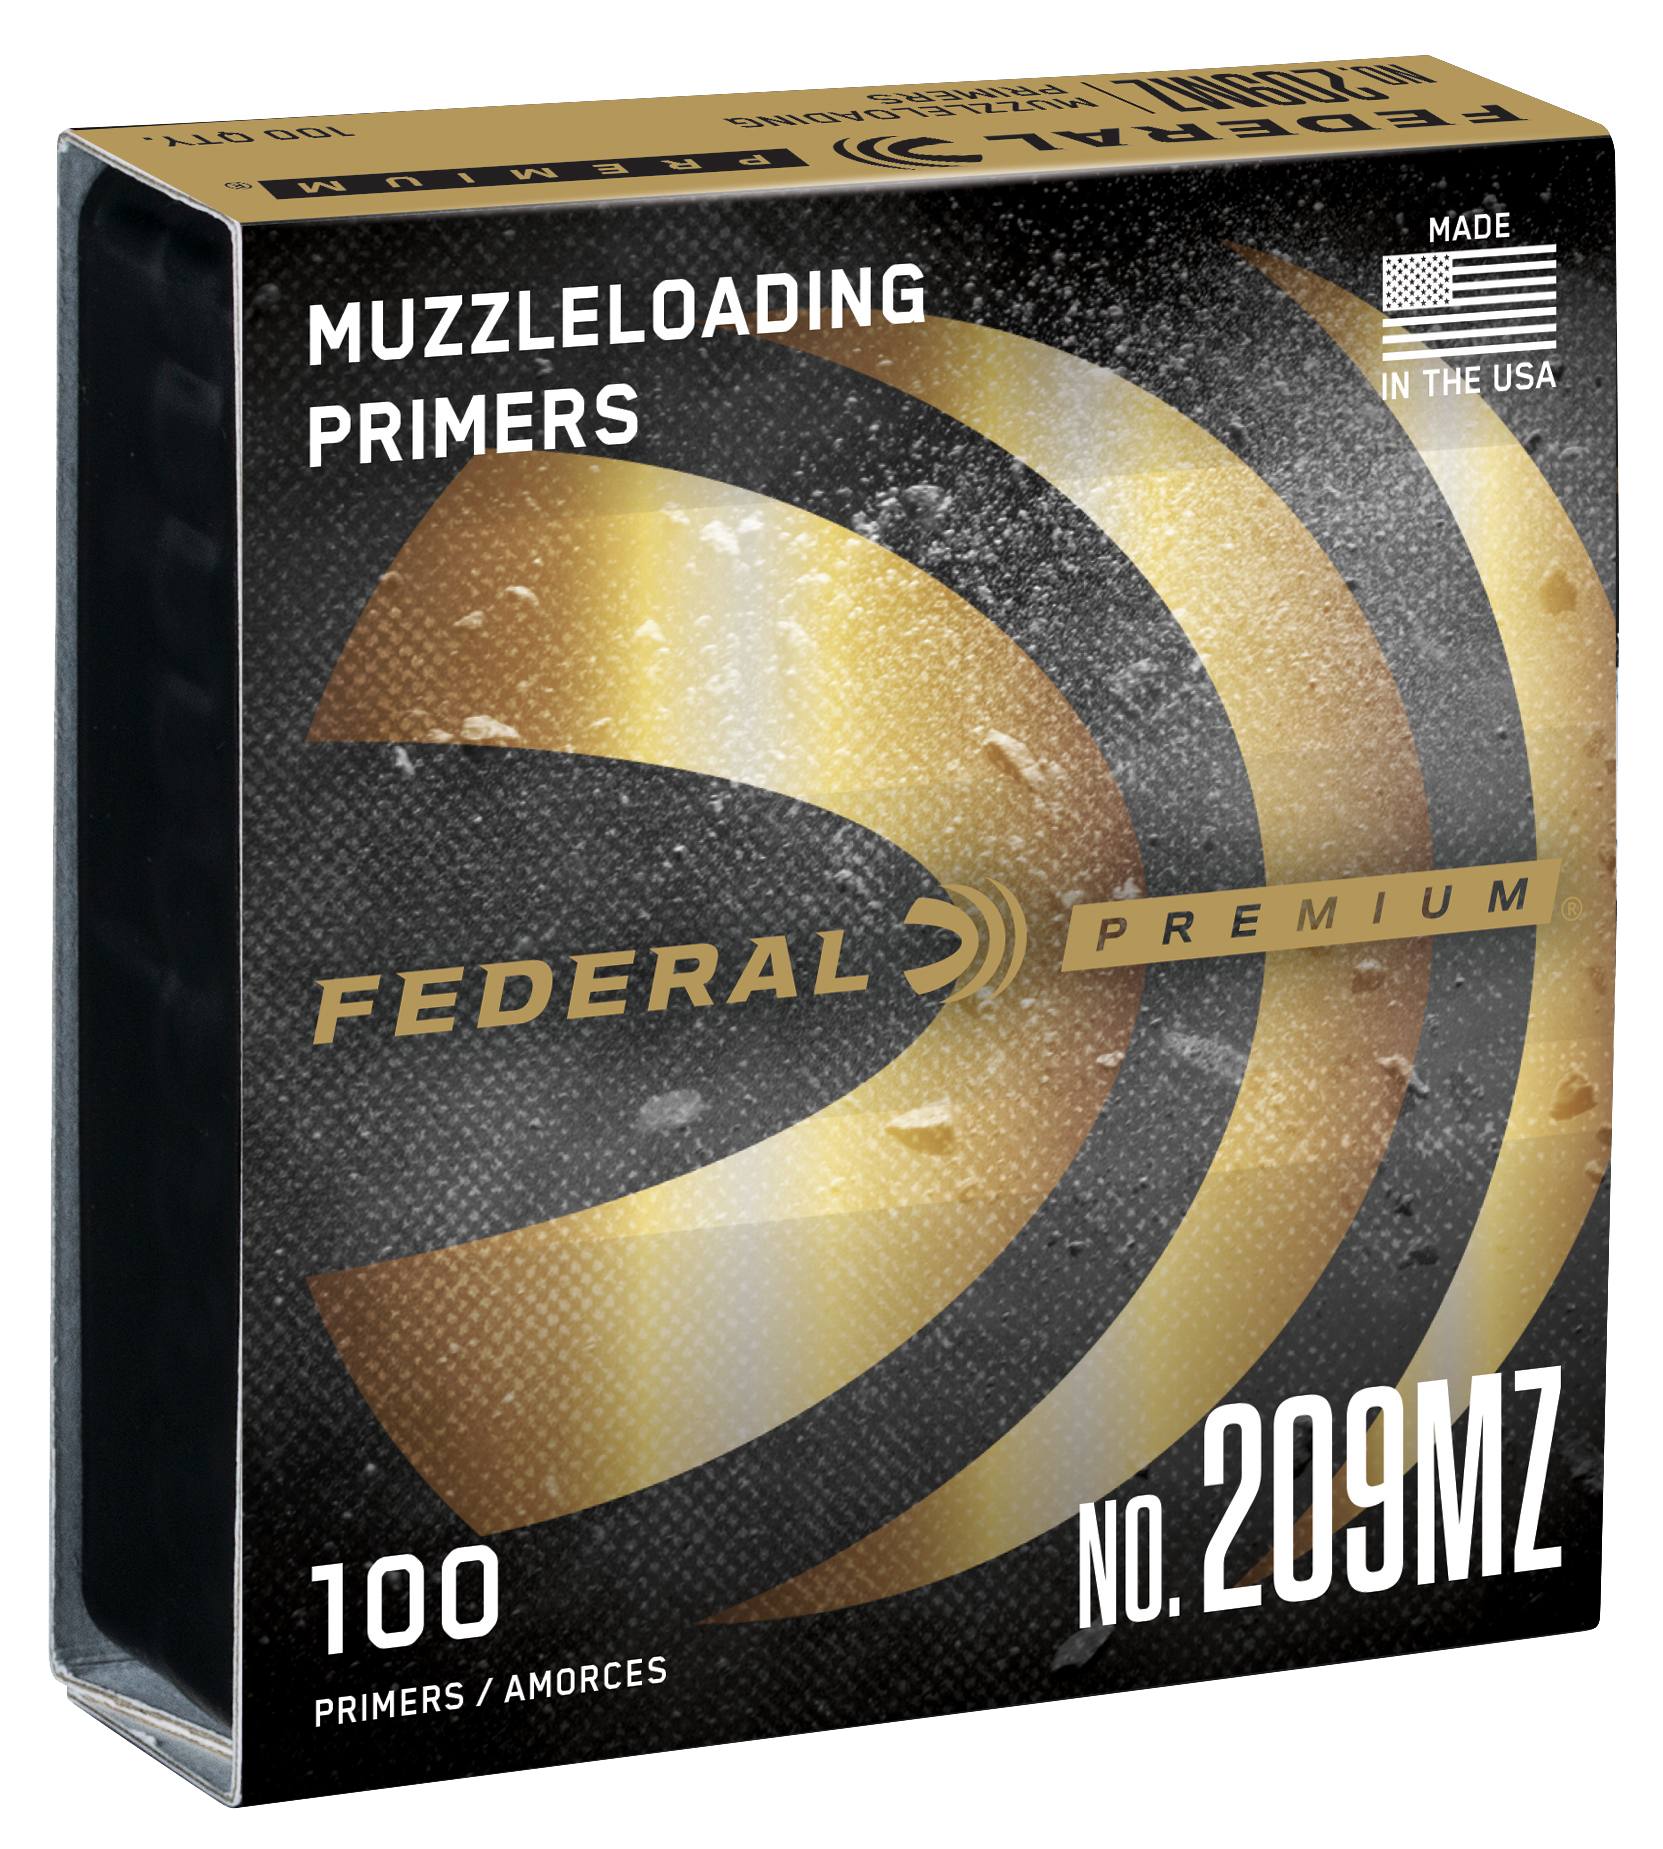 Buy 209 Muzzleloading Primer for USD 14.99 | Federal Ammunition